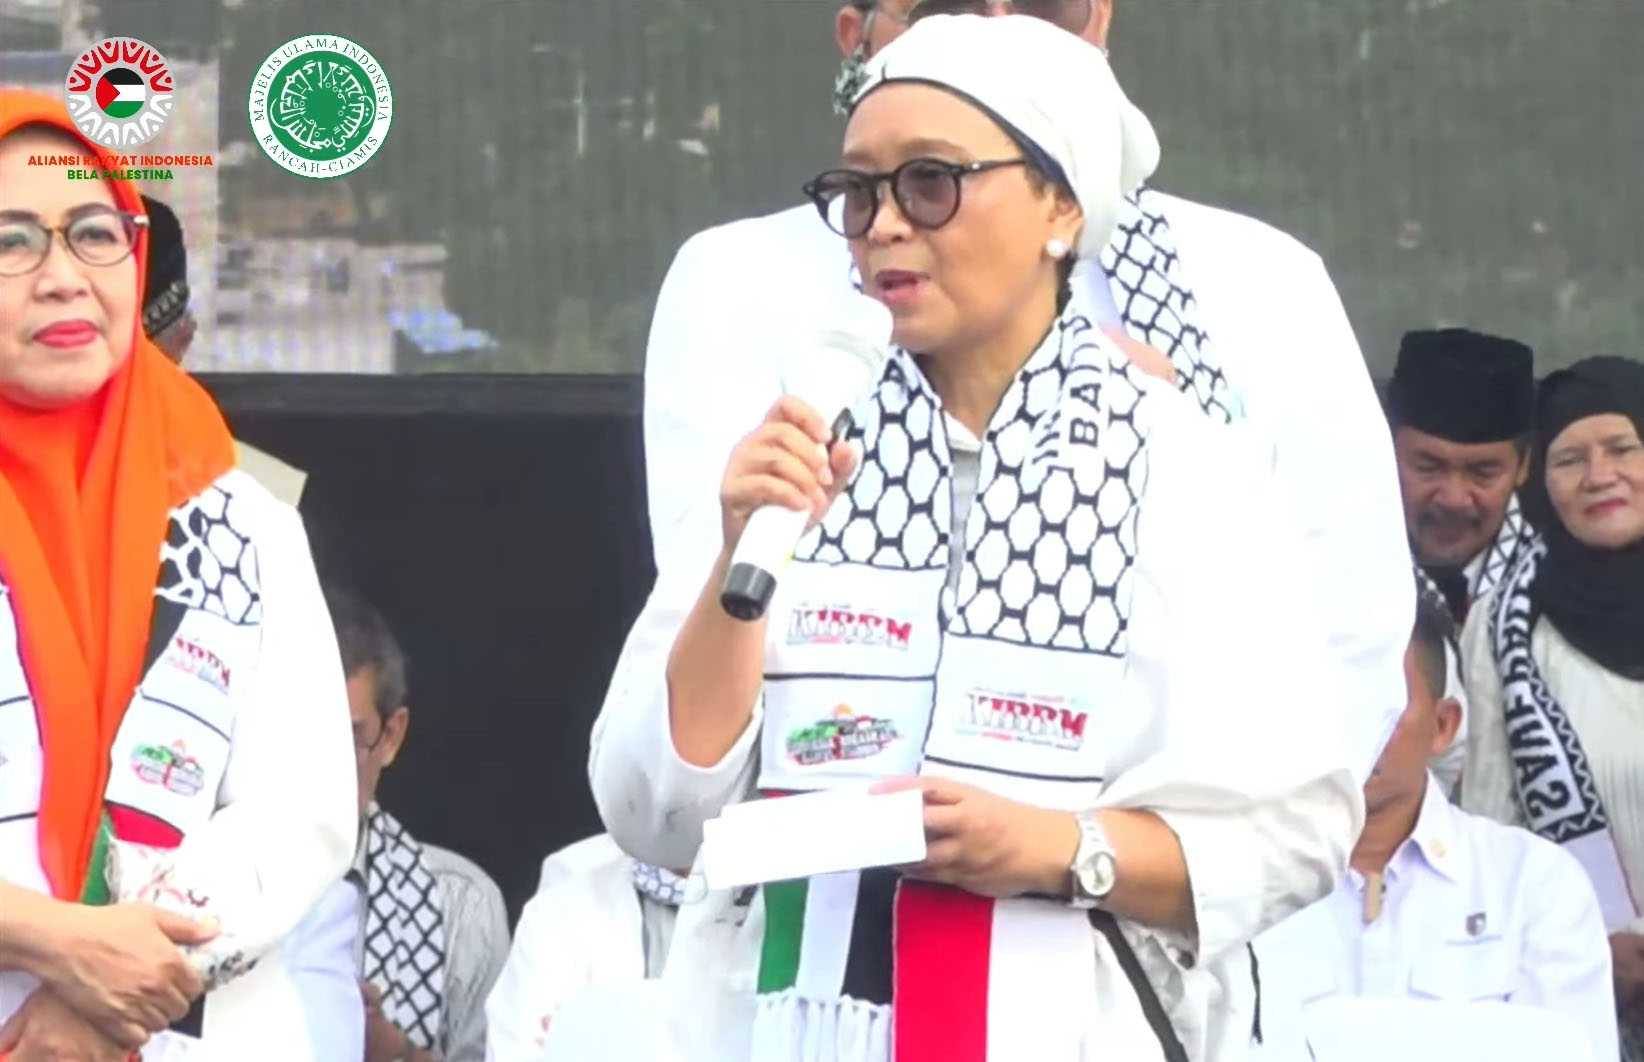 Puisi Retno Marsudi Mendapat Perhatian Massa Aliansi Rakyat Indonesia Bela Palestina